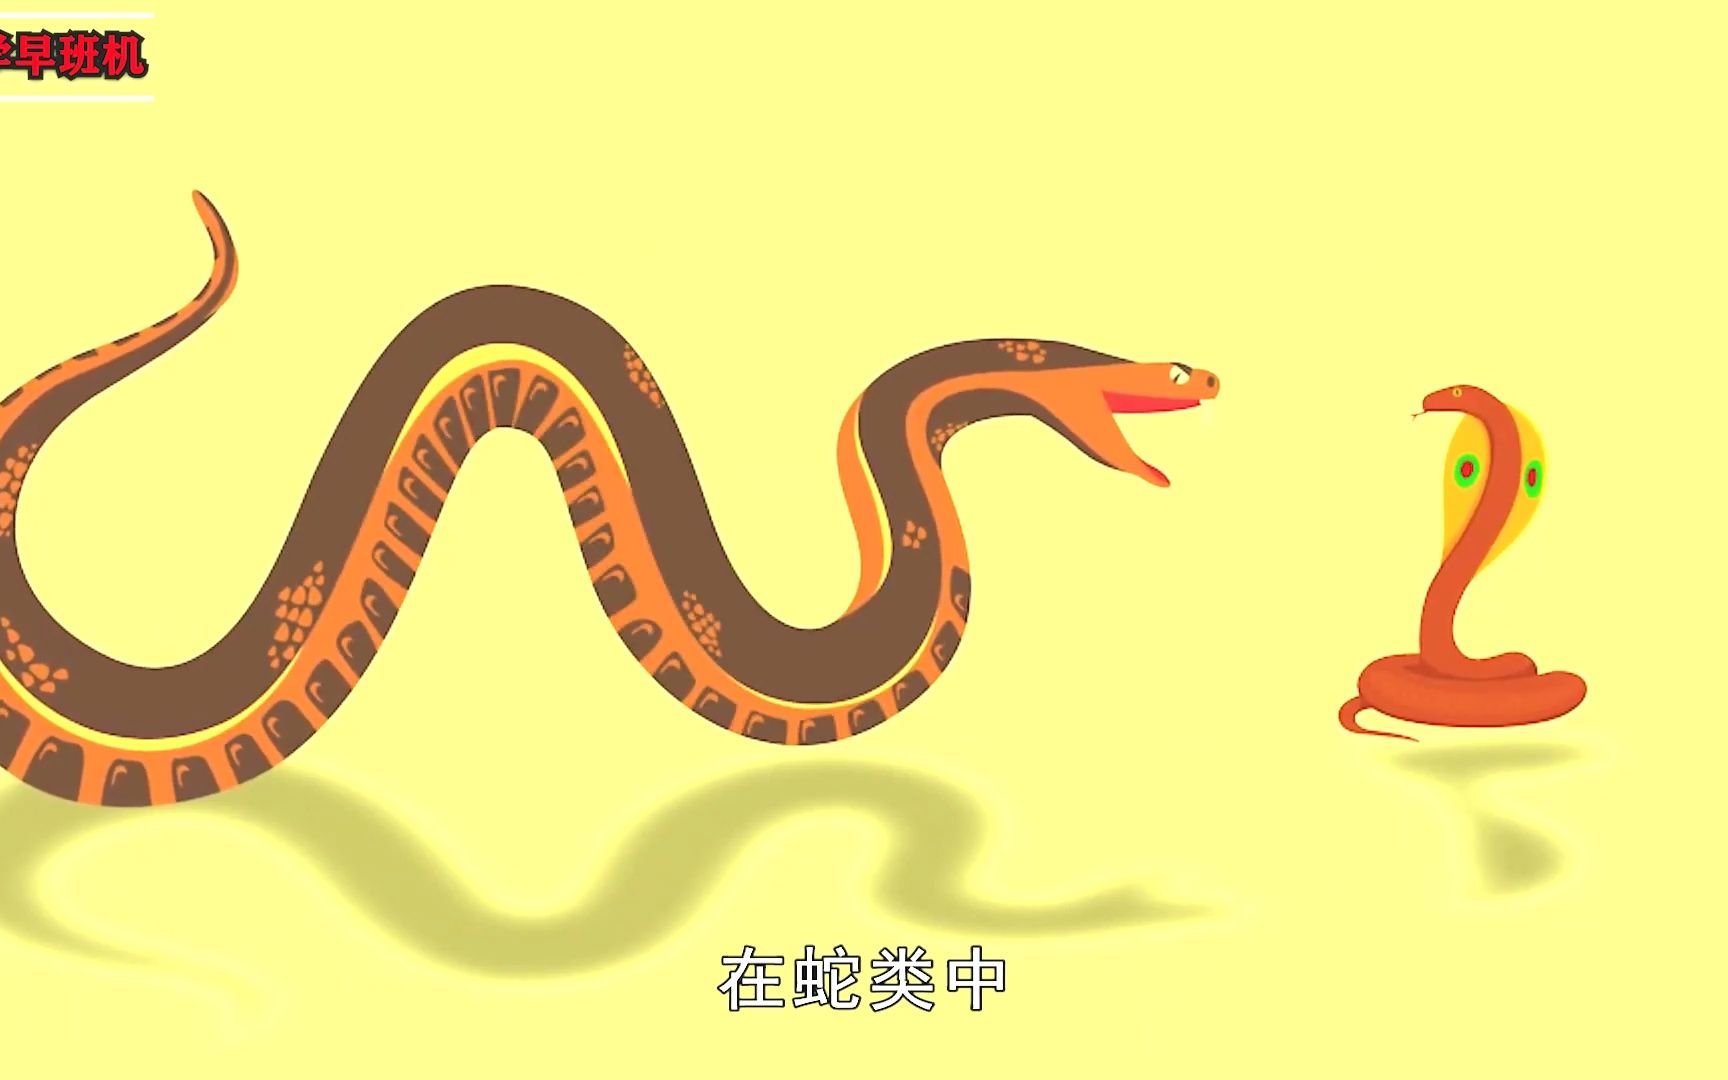 菜花蛇为何是百蛇之王？毒蛇为何会怕它，菜花蛇有何过蛇之处？